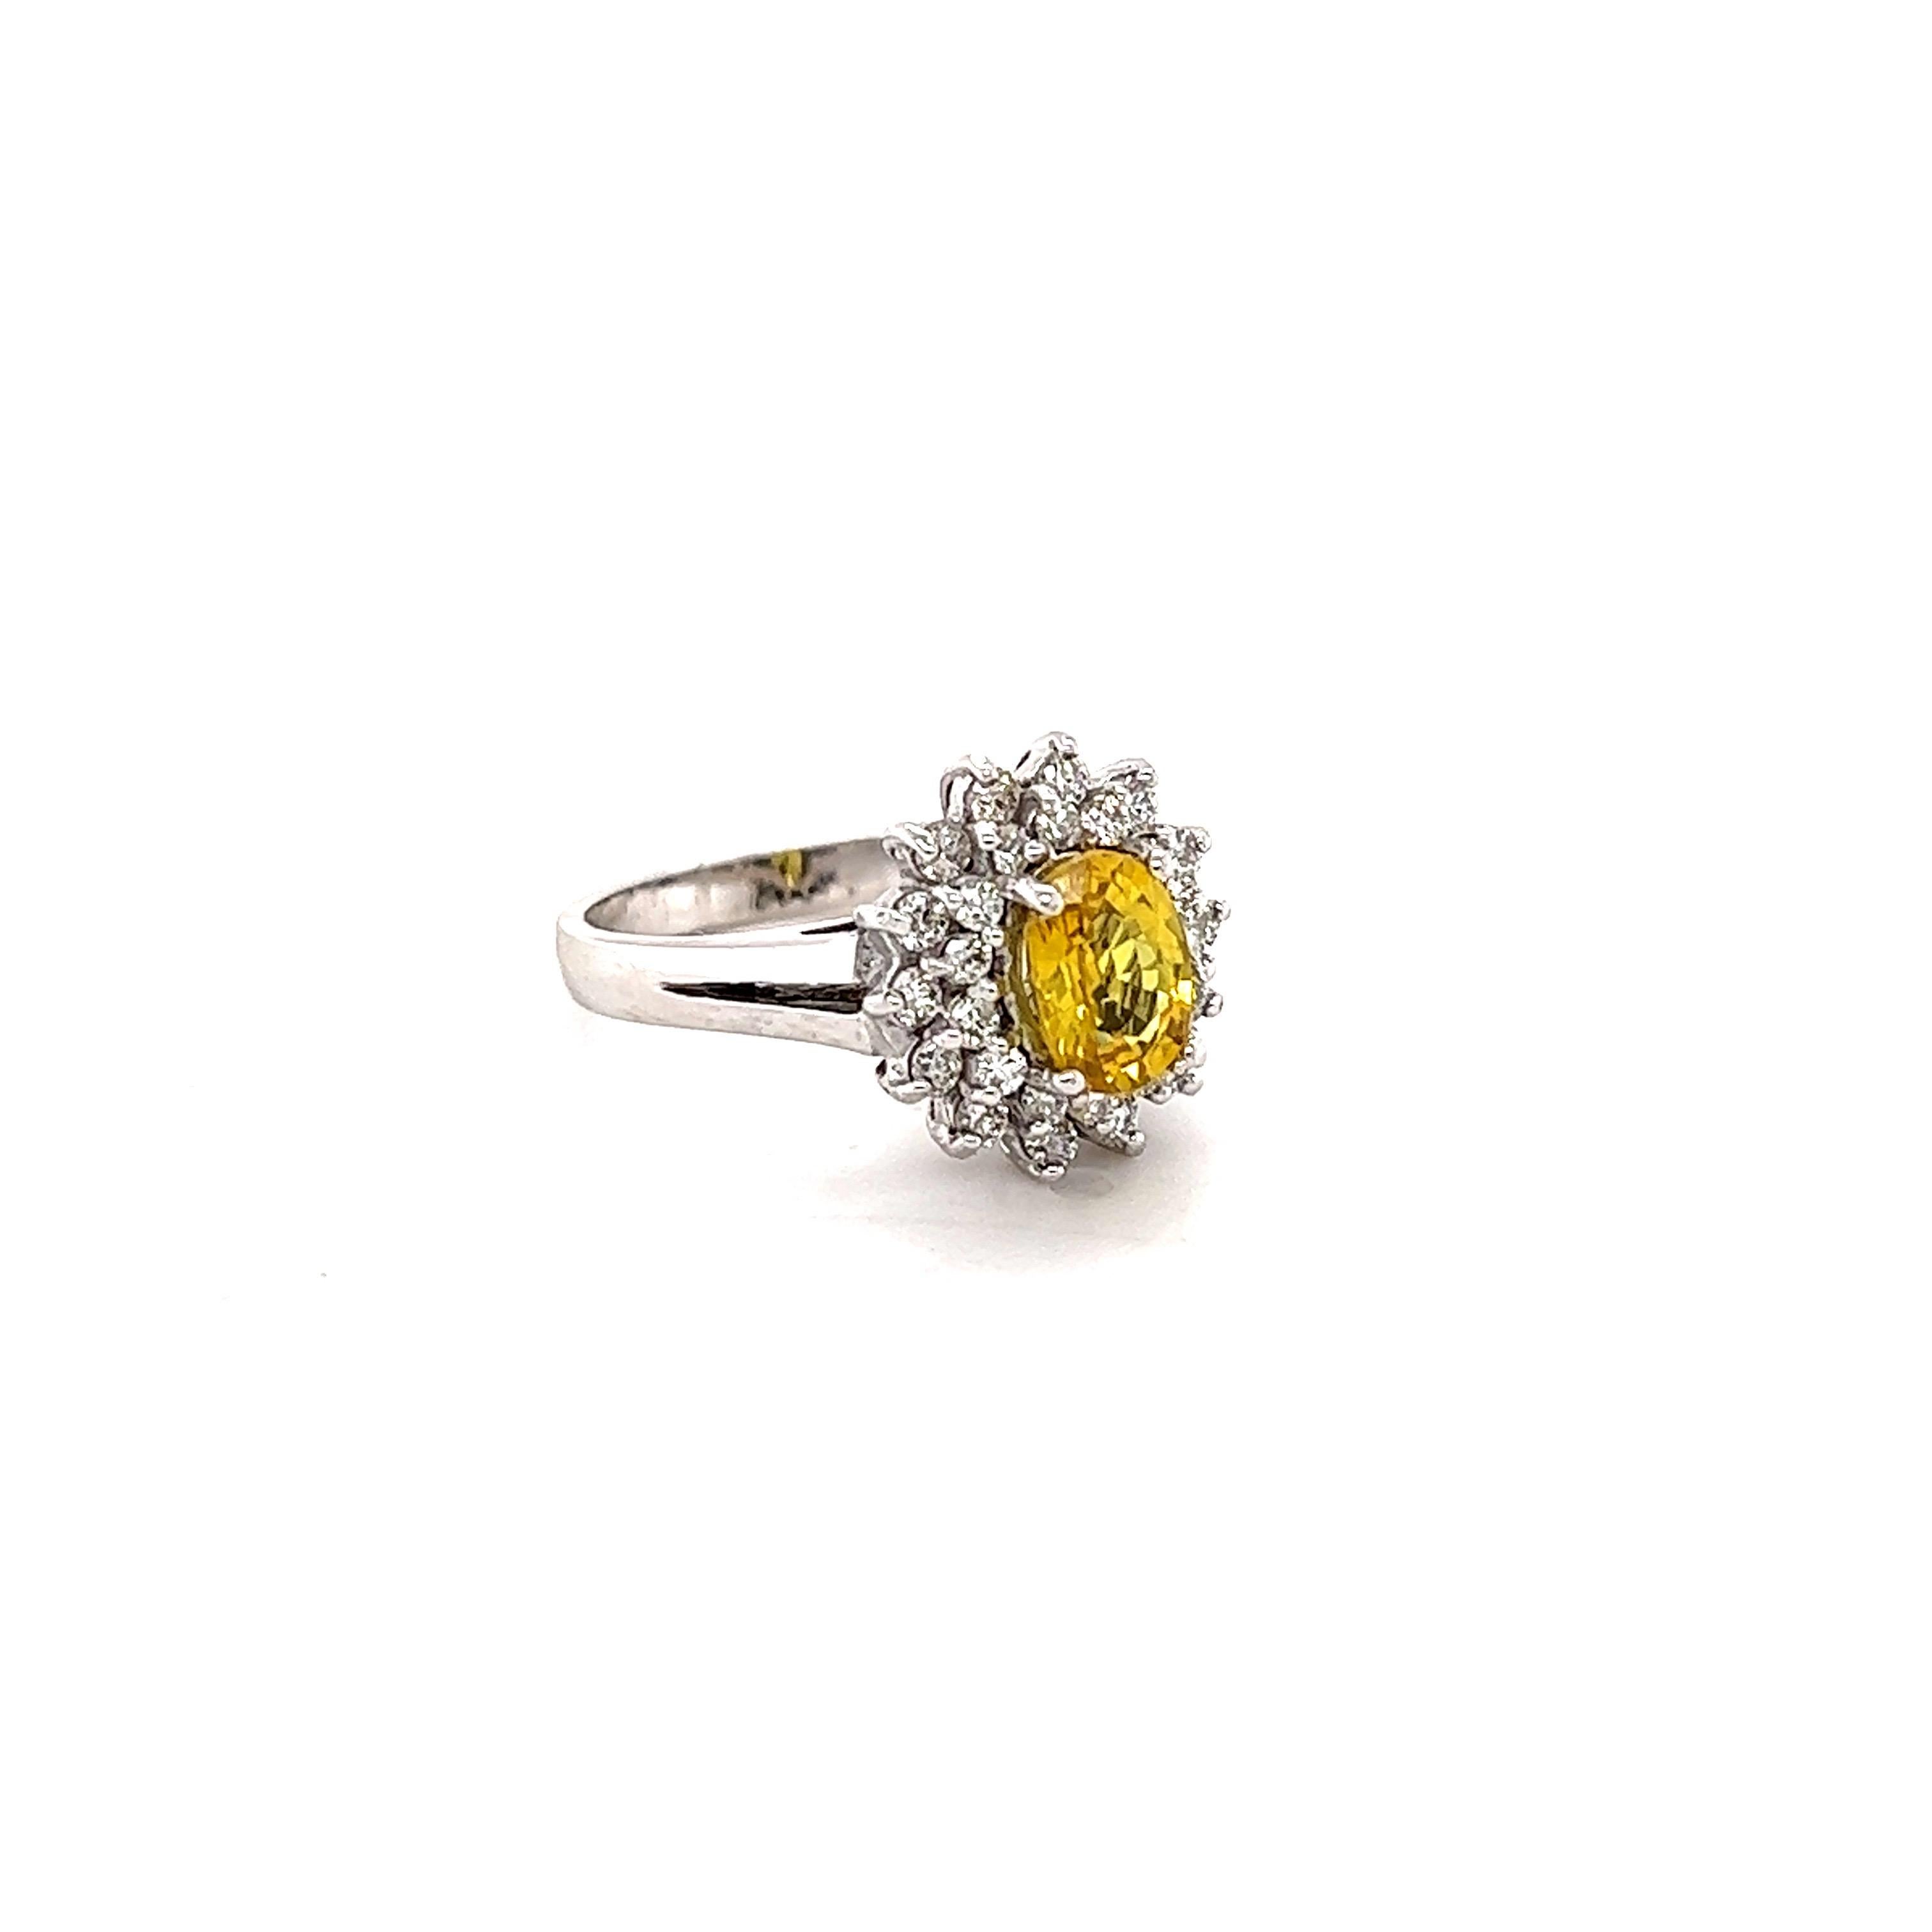 Dieser schöne Ring hat eine natürliche Oval Cut Heated Yellow Sapphire, dass Gewichte 1,16 Karat. Der gelbe Saphir misst 7 mm x 5 mm. 

Der Ring ist mit 28 Diamanten im Rundschliff mit einem Gewicht von 0,51 Karat und einer Reinheit und Farbe von